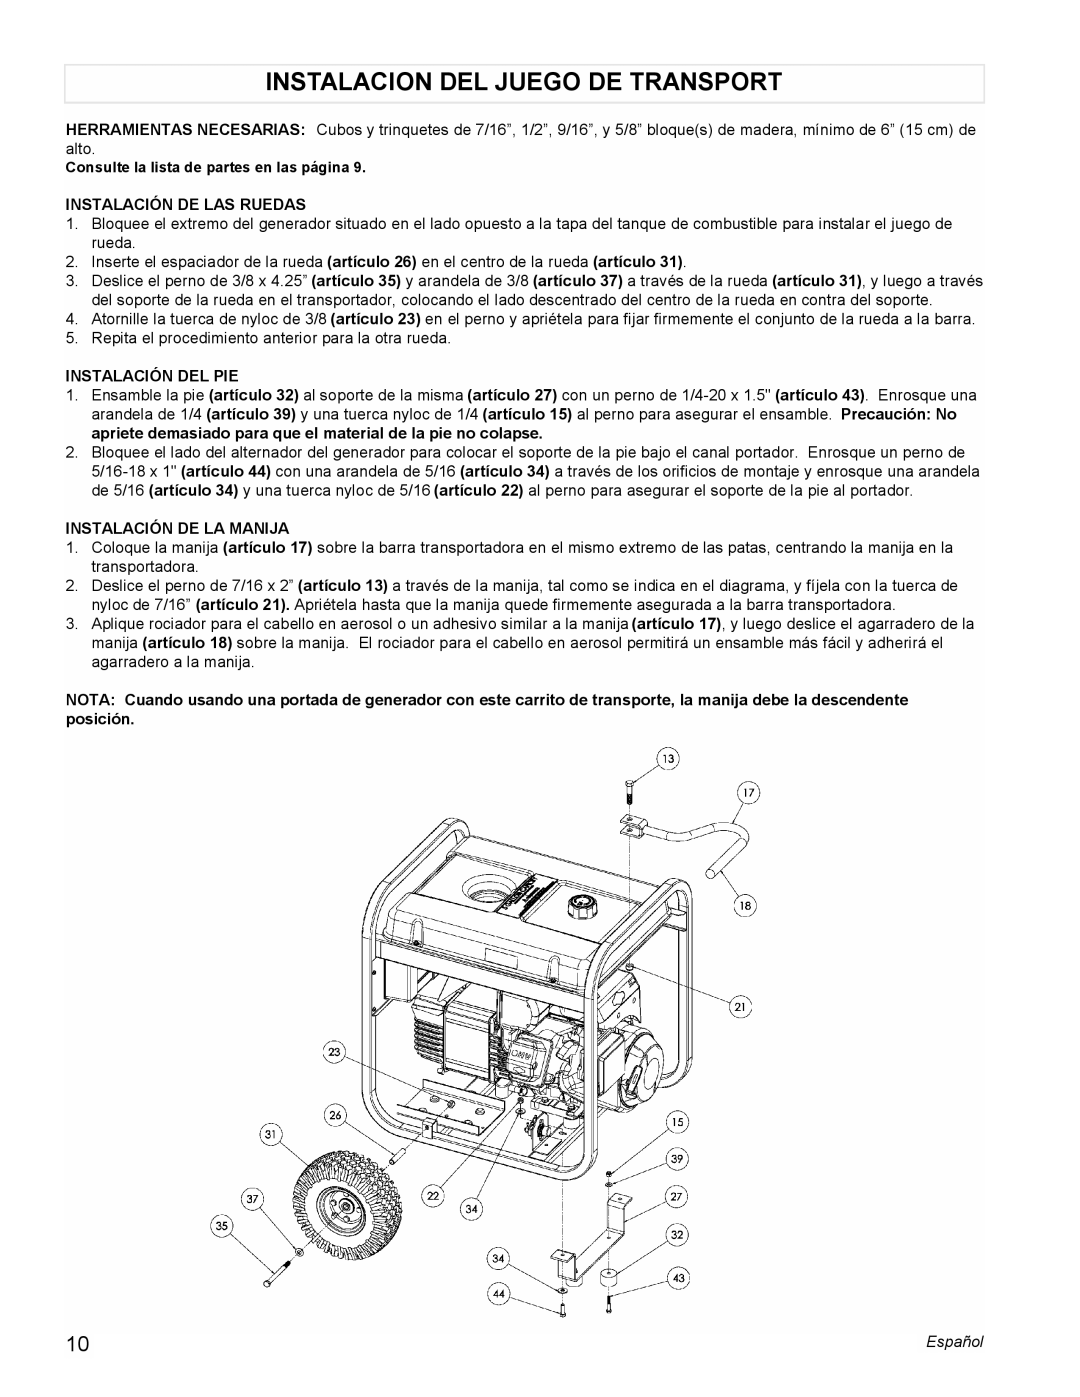 Powermate PM0545001 manual Instalacion Del Juego De Transport, Instalación De Las Ruedas, Instalación Del Pie 